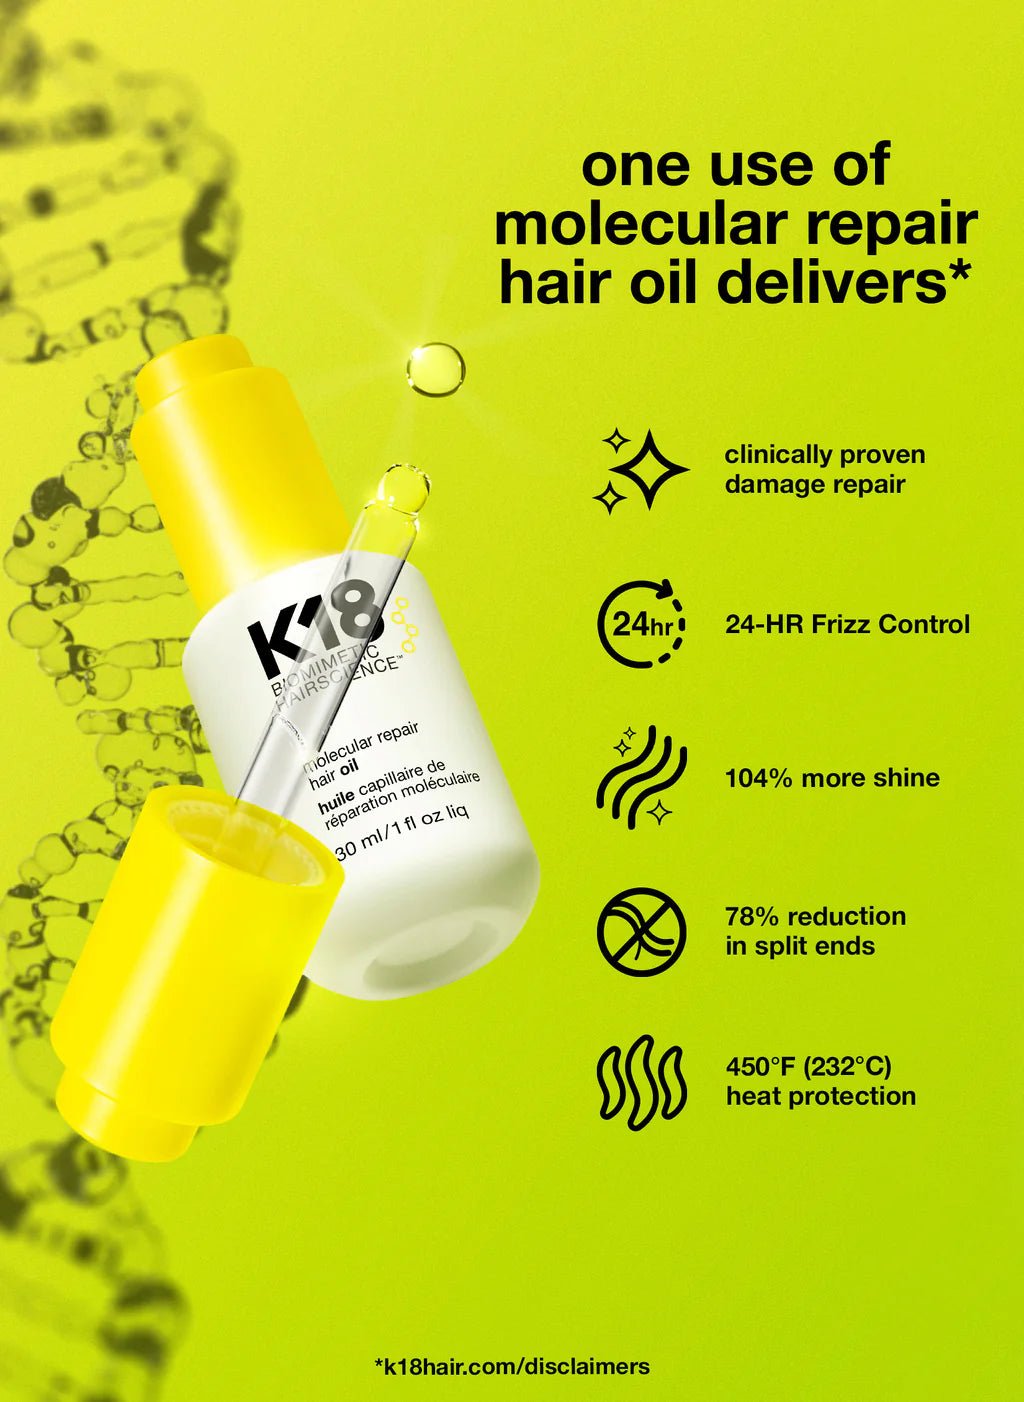 K18 molecular repair hair oil- 30ml - shelley and co